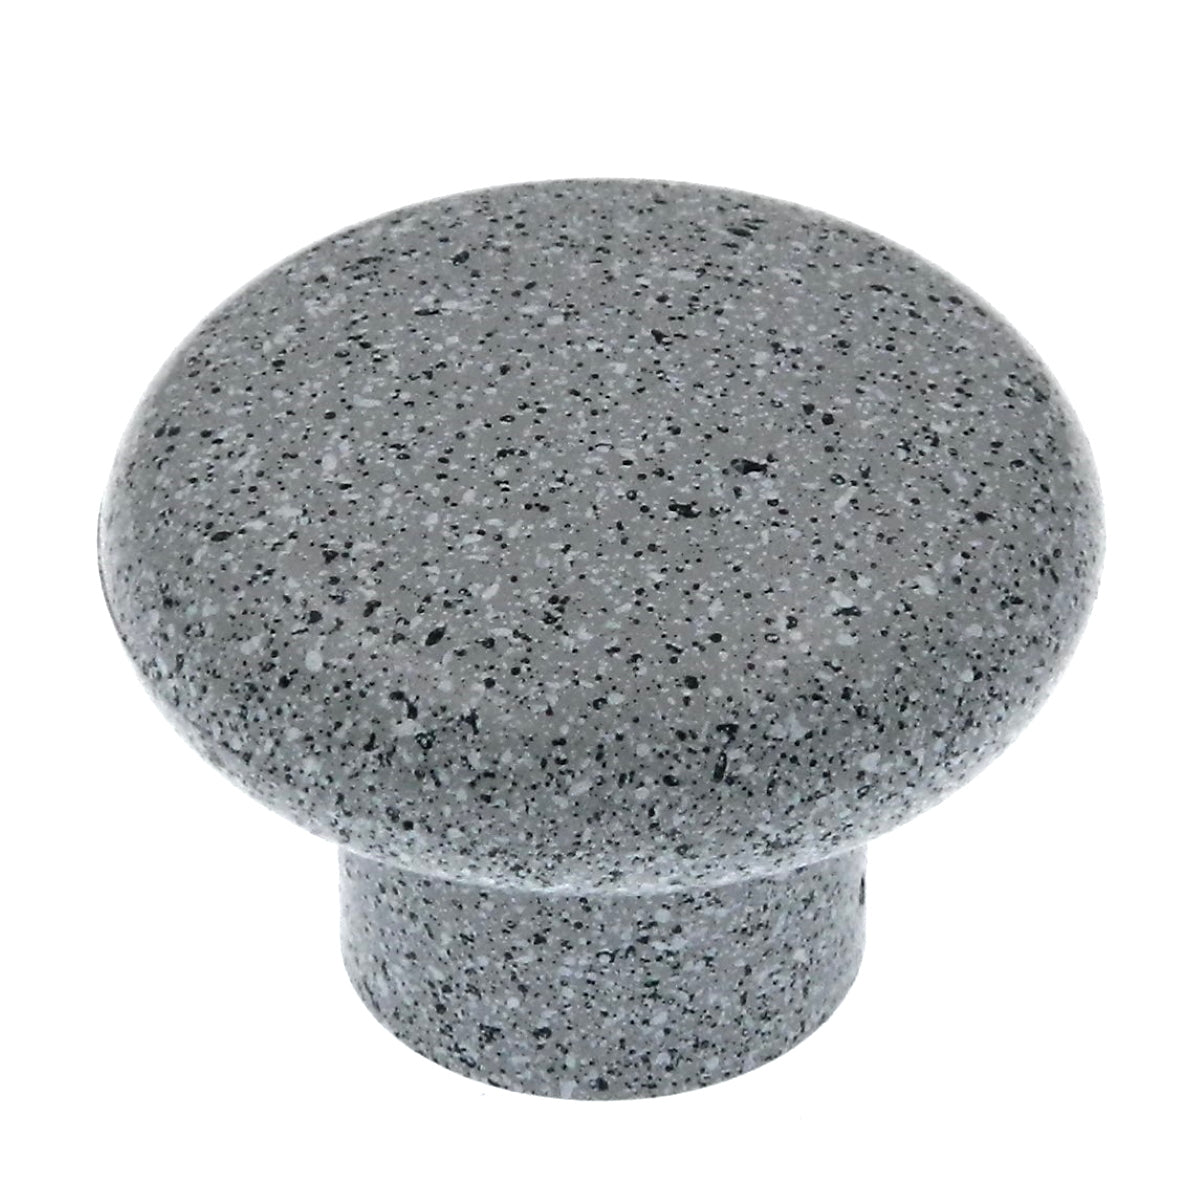 Amerock Plastics BP5421-SPG - Perilla de plástico para gabinete redondo de granito gris de 1 1/4"